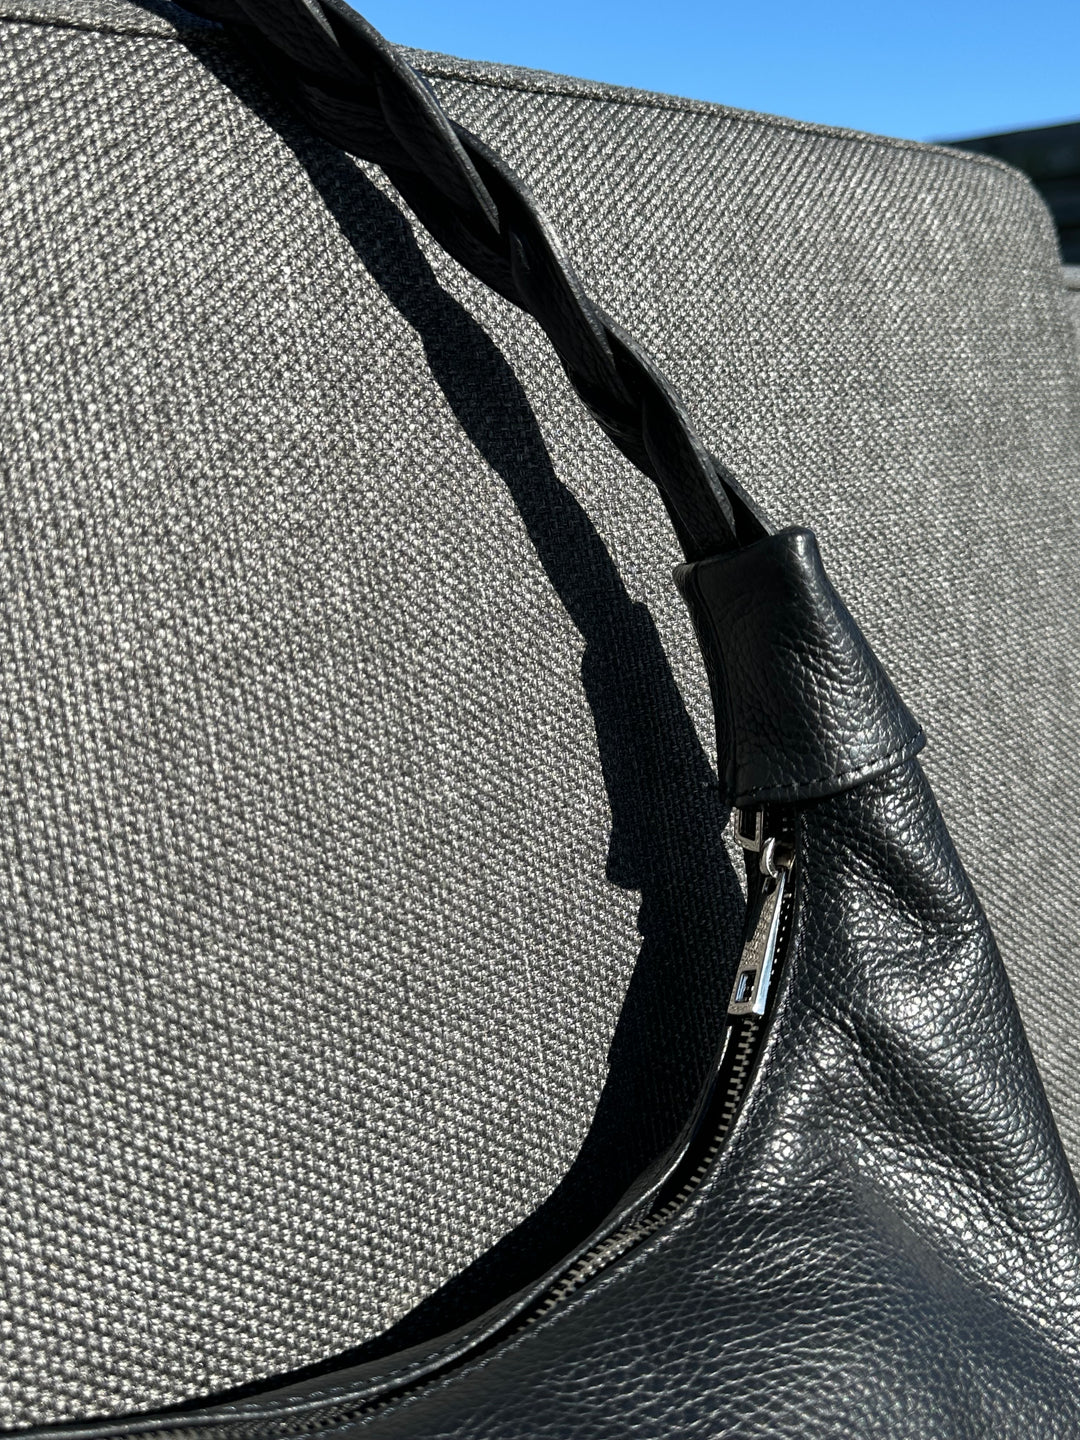 zwarte handtas van leder